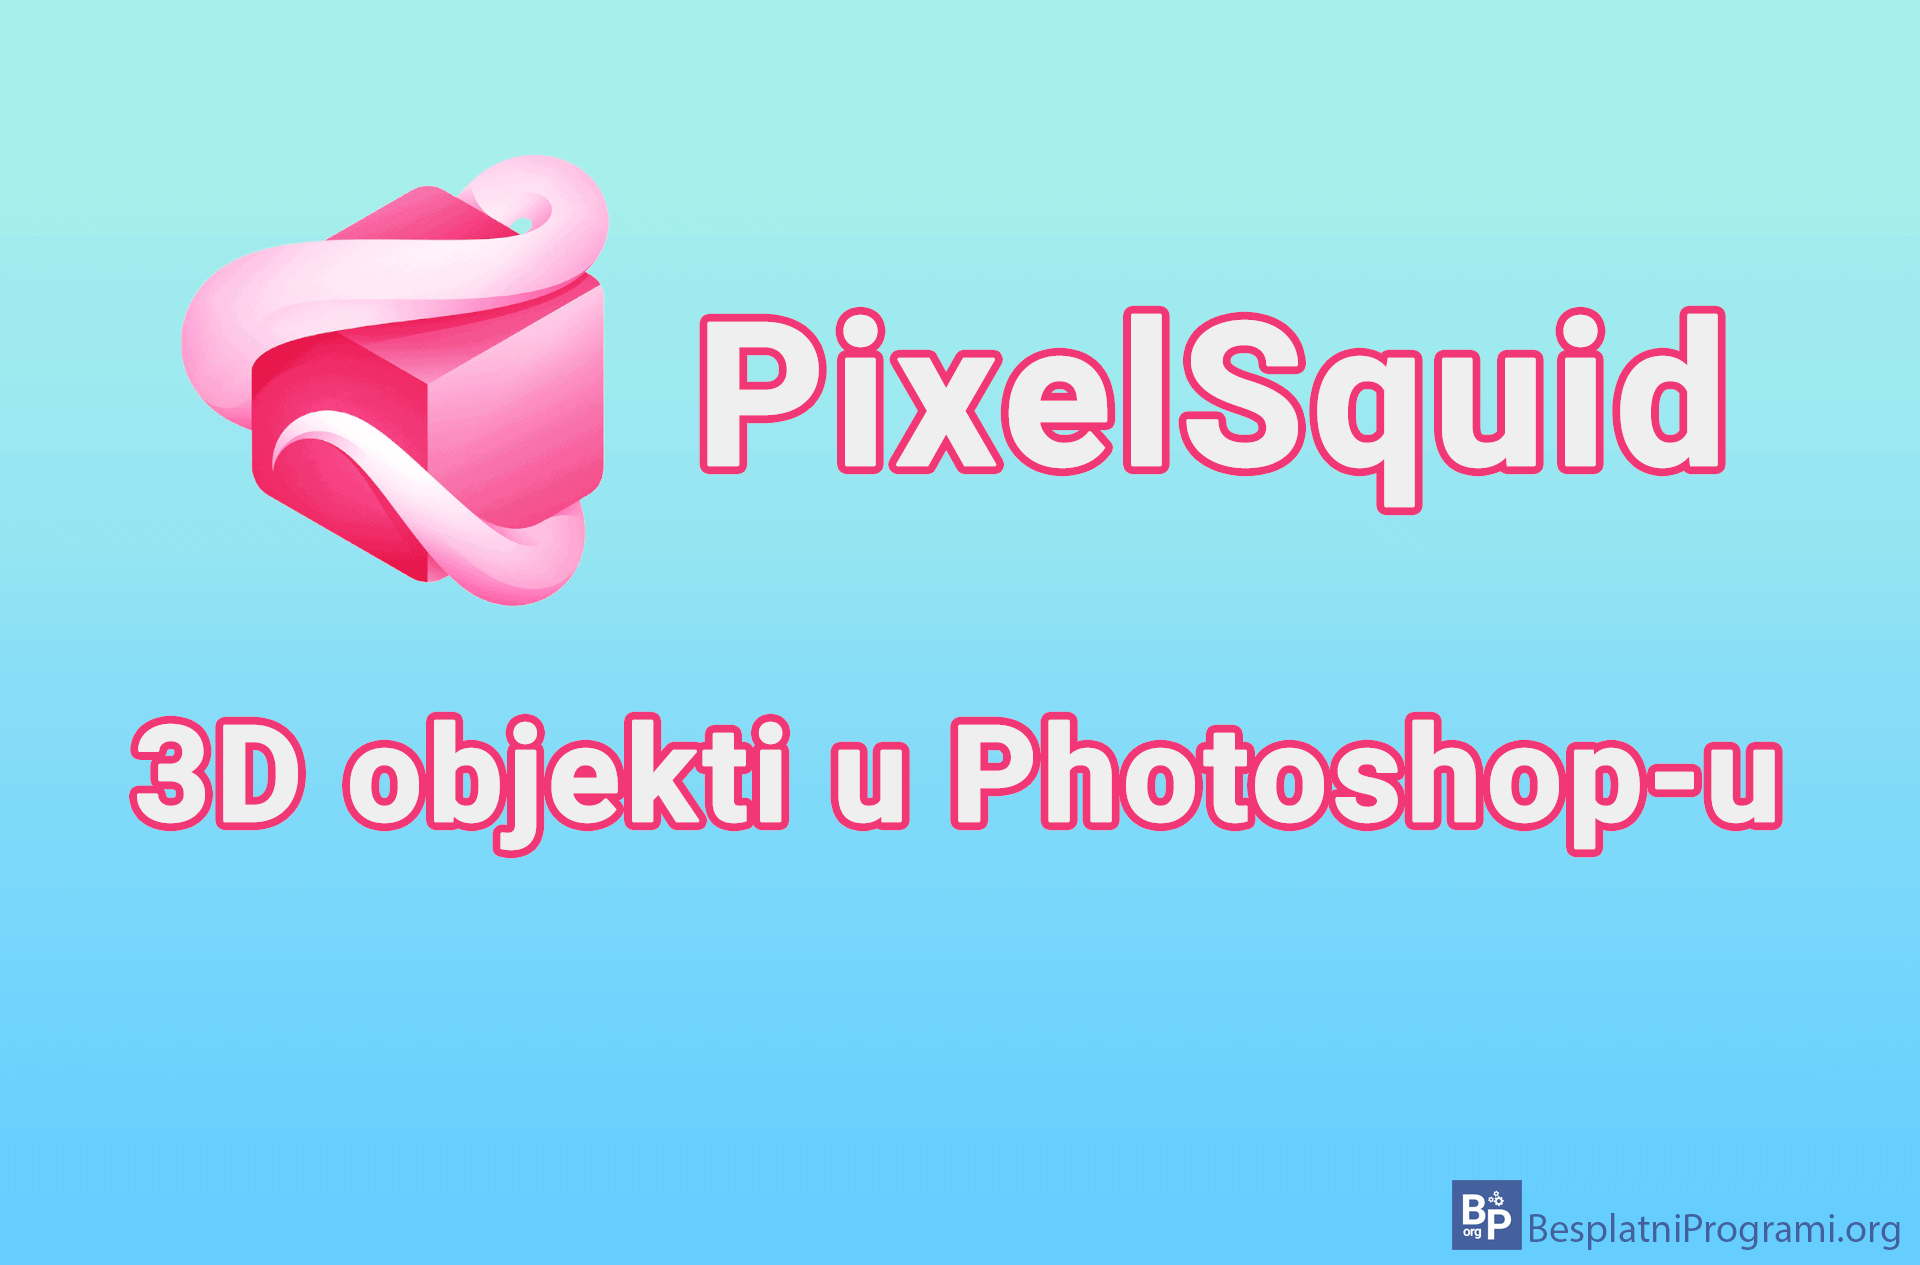 PixelSquid - 3D objekti u Photoshop-u